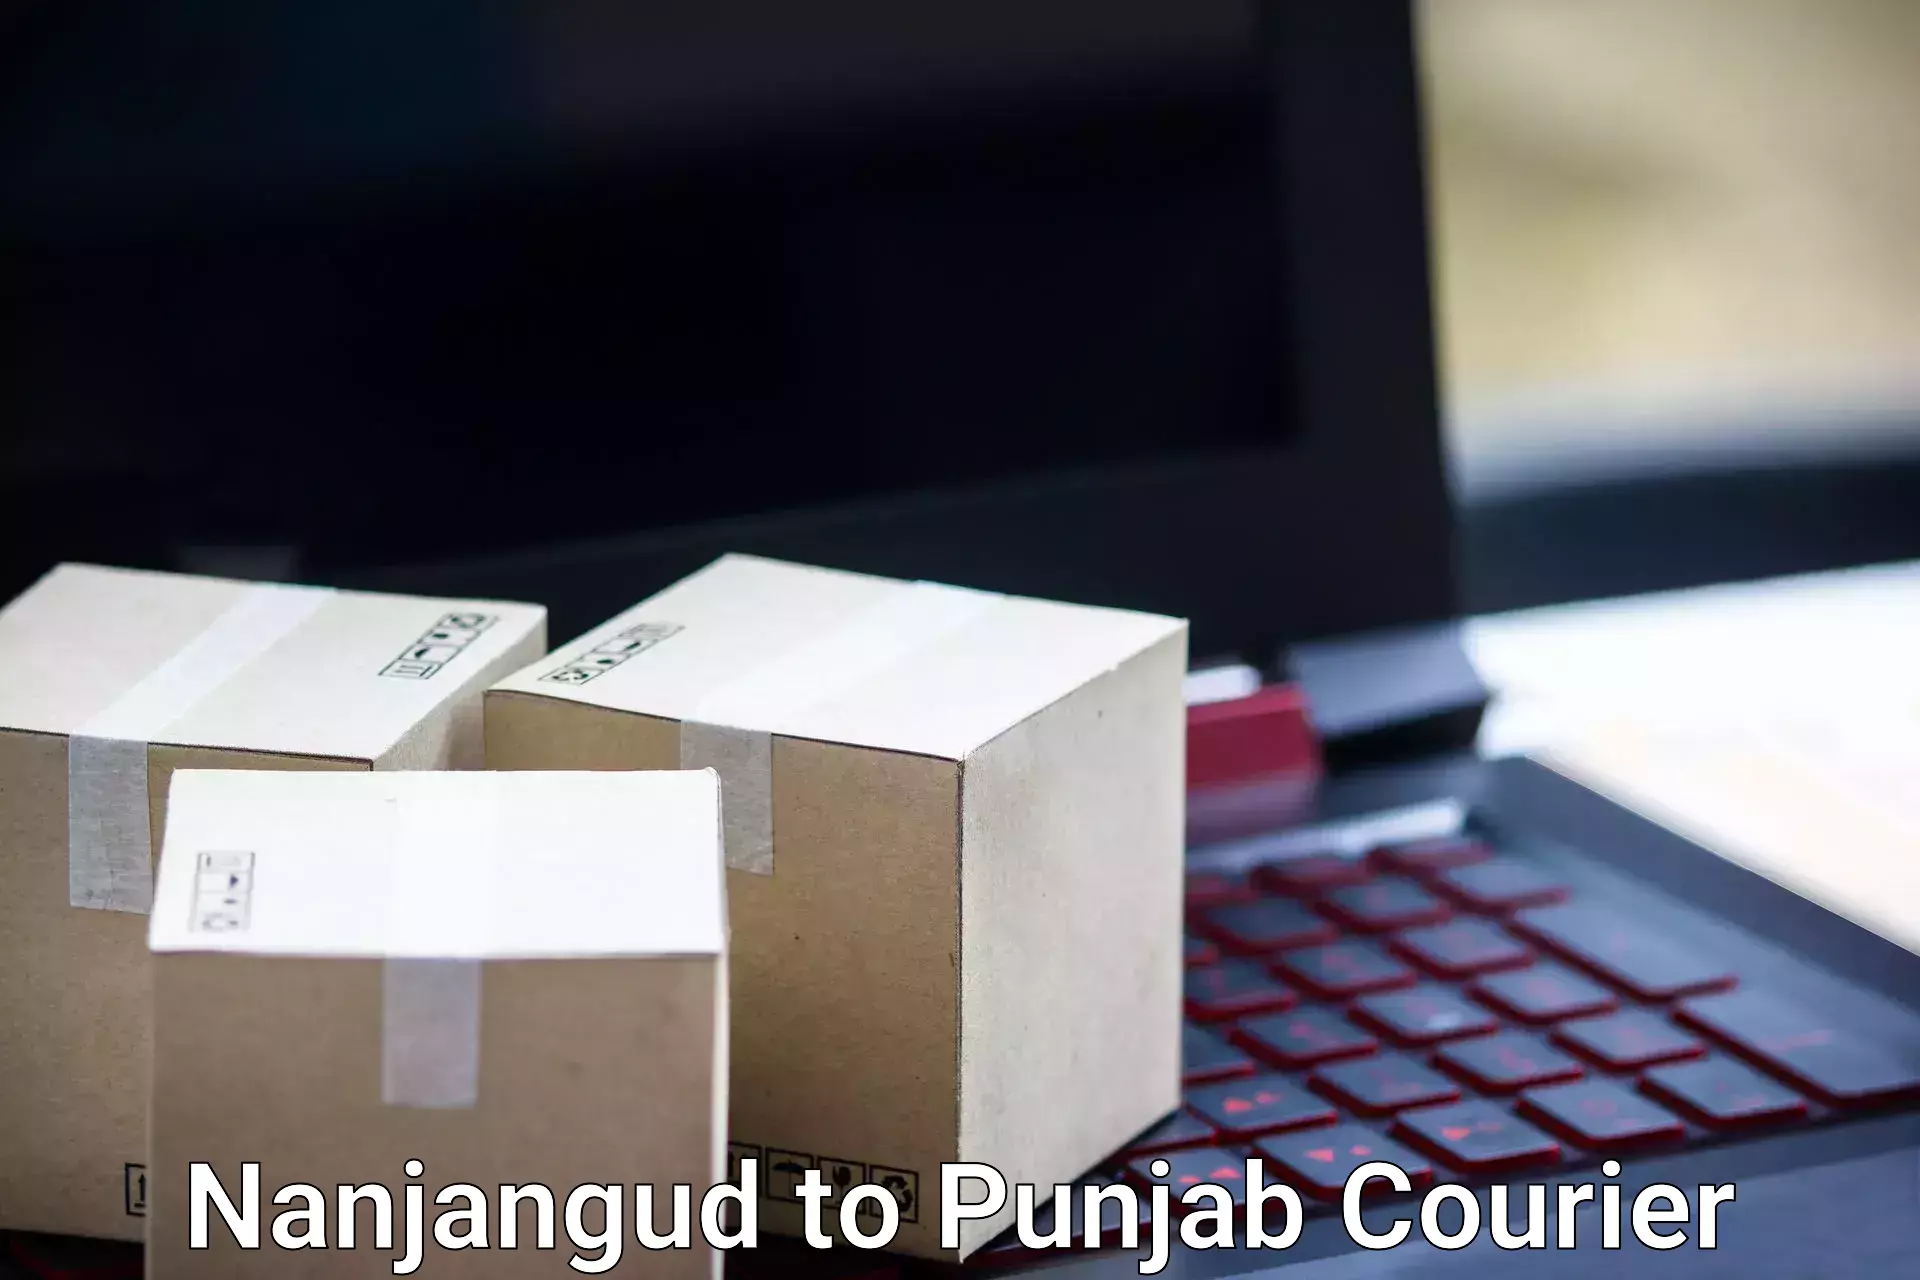 Door-to-door baggage service Nanjangud to Punjab